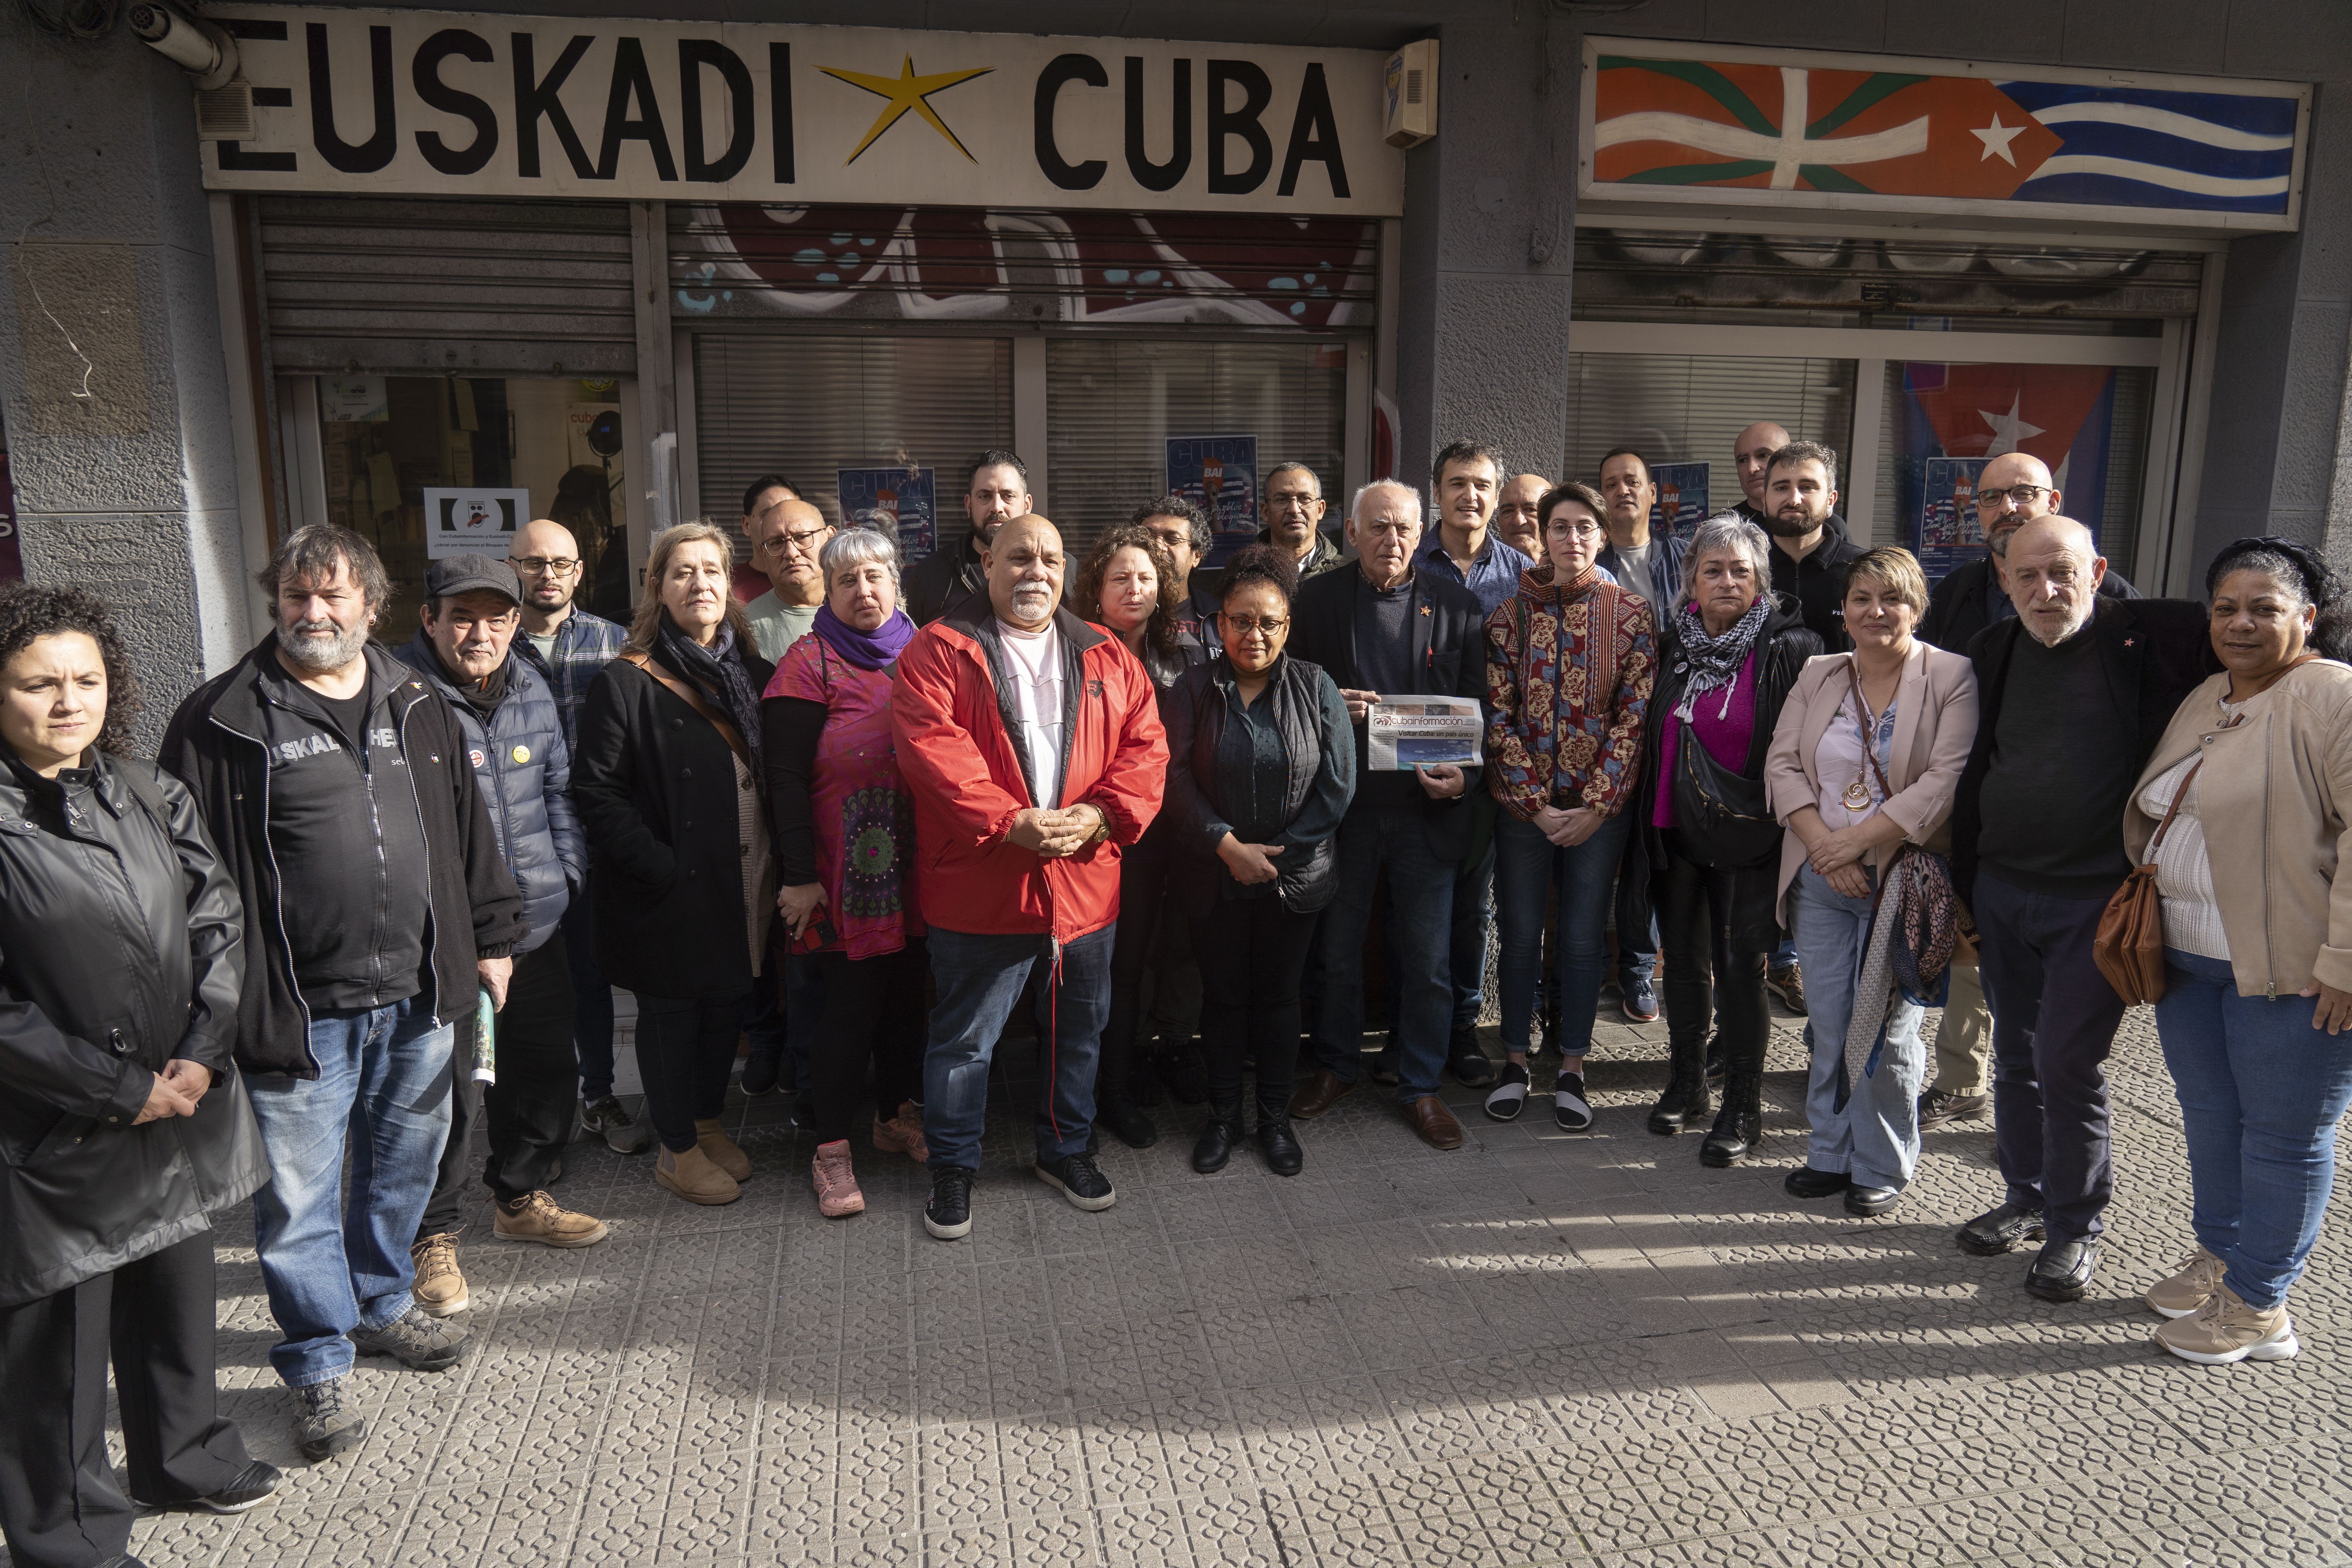 Euskadi-Cuba elkartea eta Cubainformacion komunikabidea epaituko dituzte Madrilen, AEBek Kubari ezarritako blokeo ekonomikoari buruzko artikulu bat argitaratzeagatik.